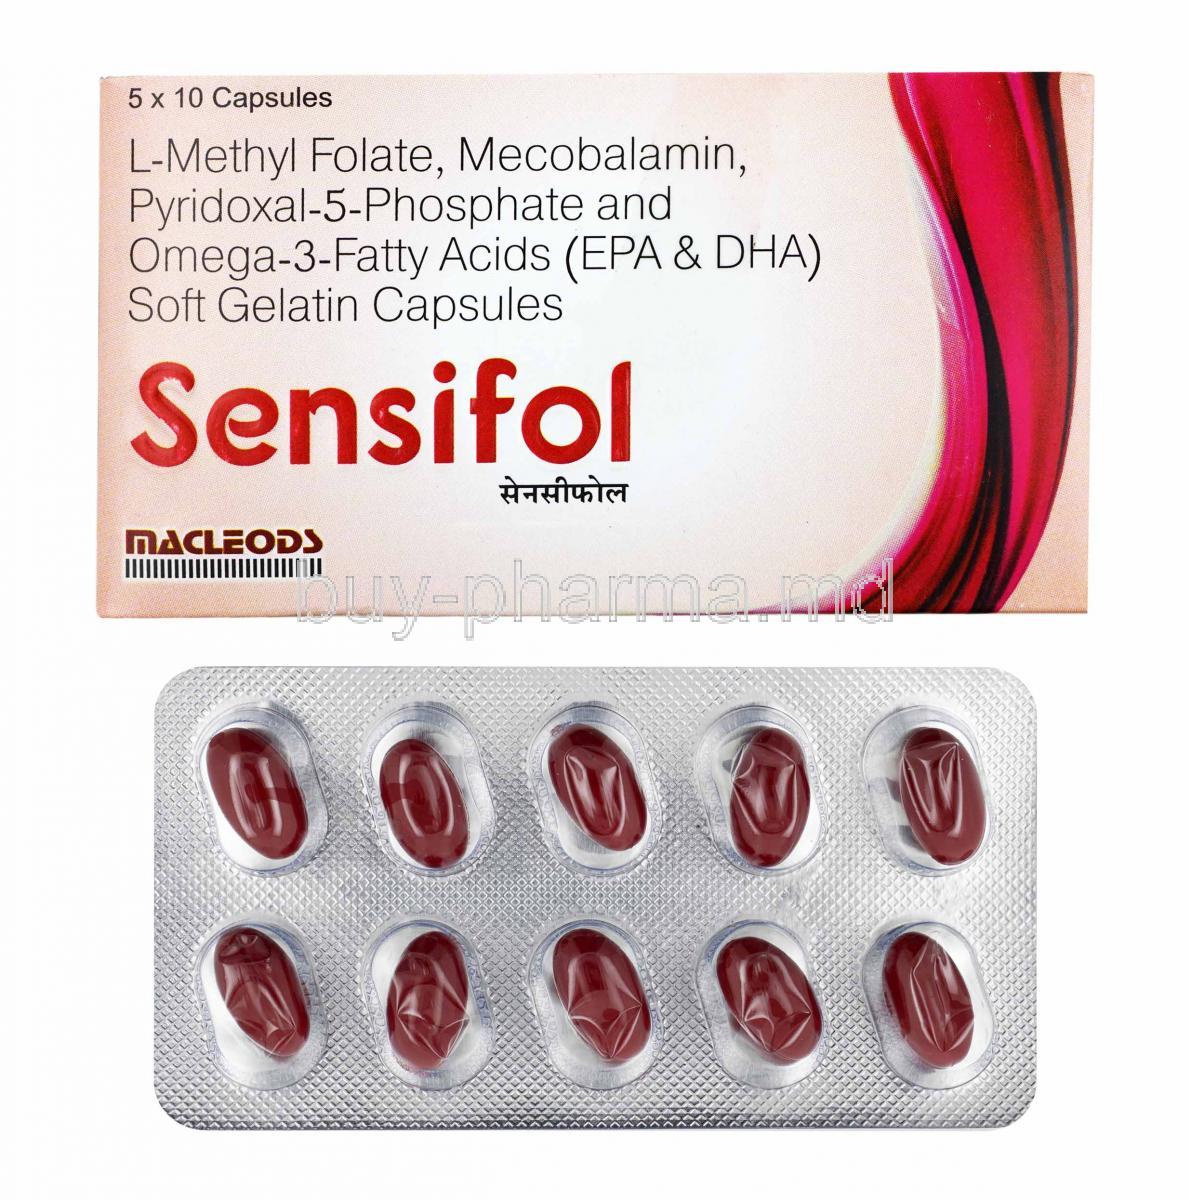 Sensifol box and capsules